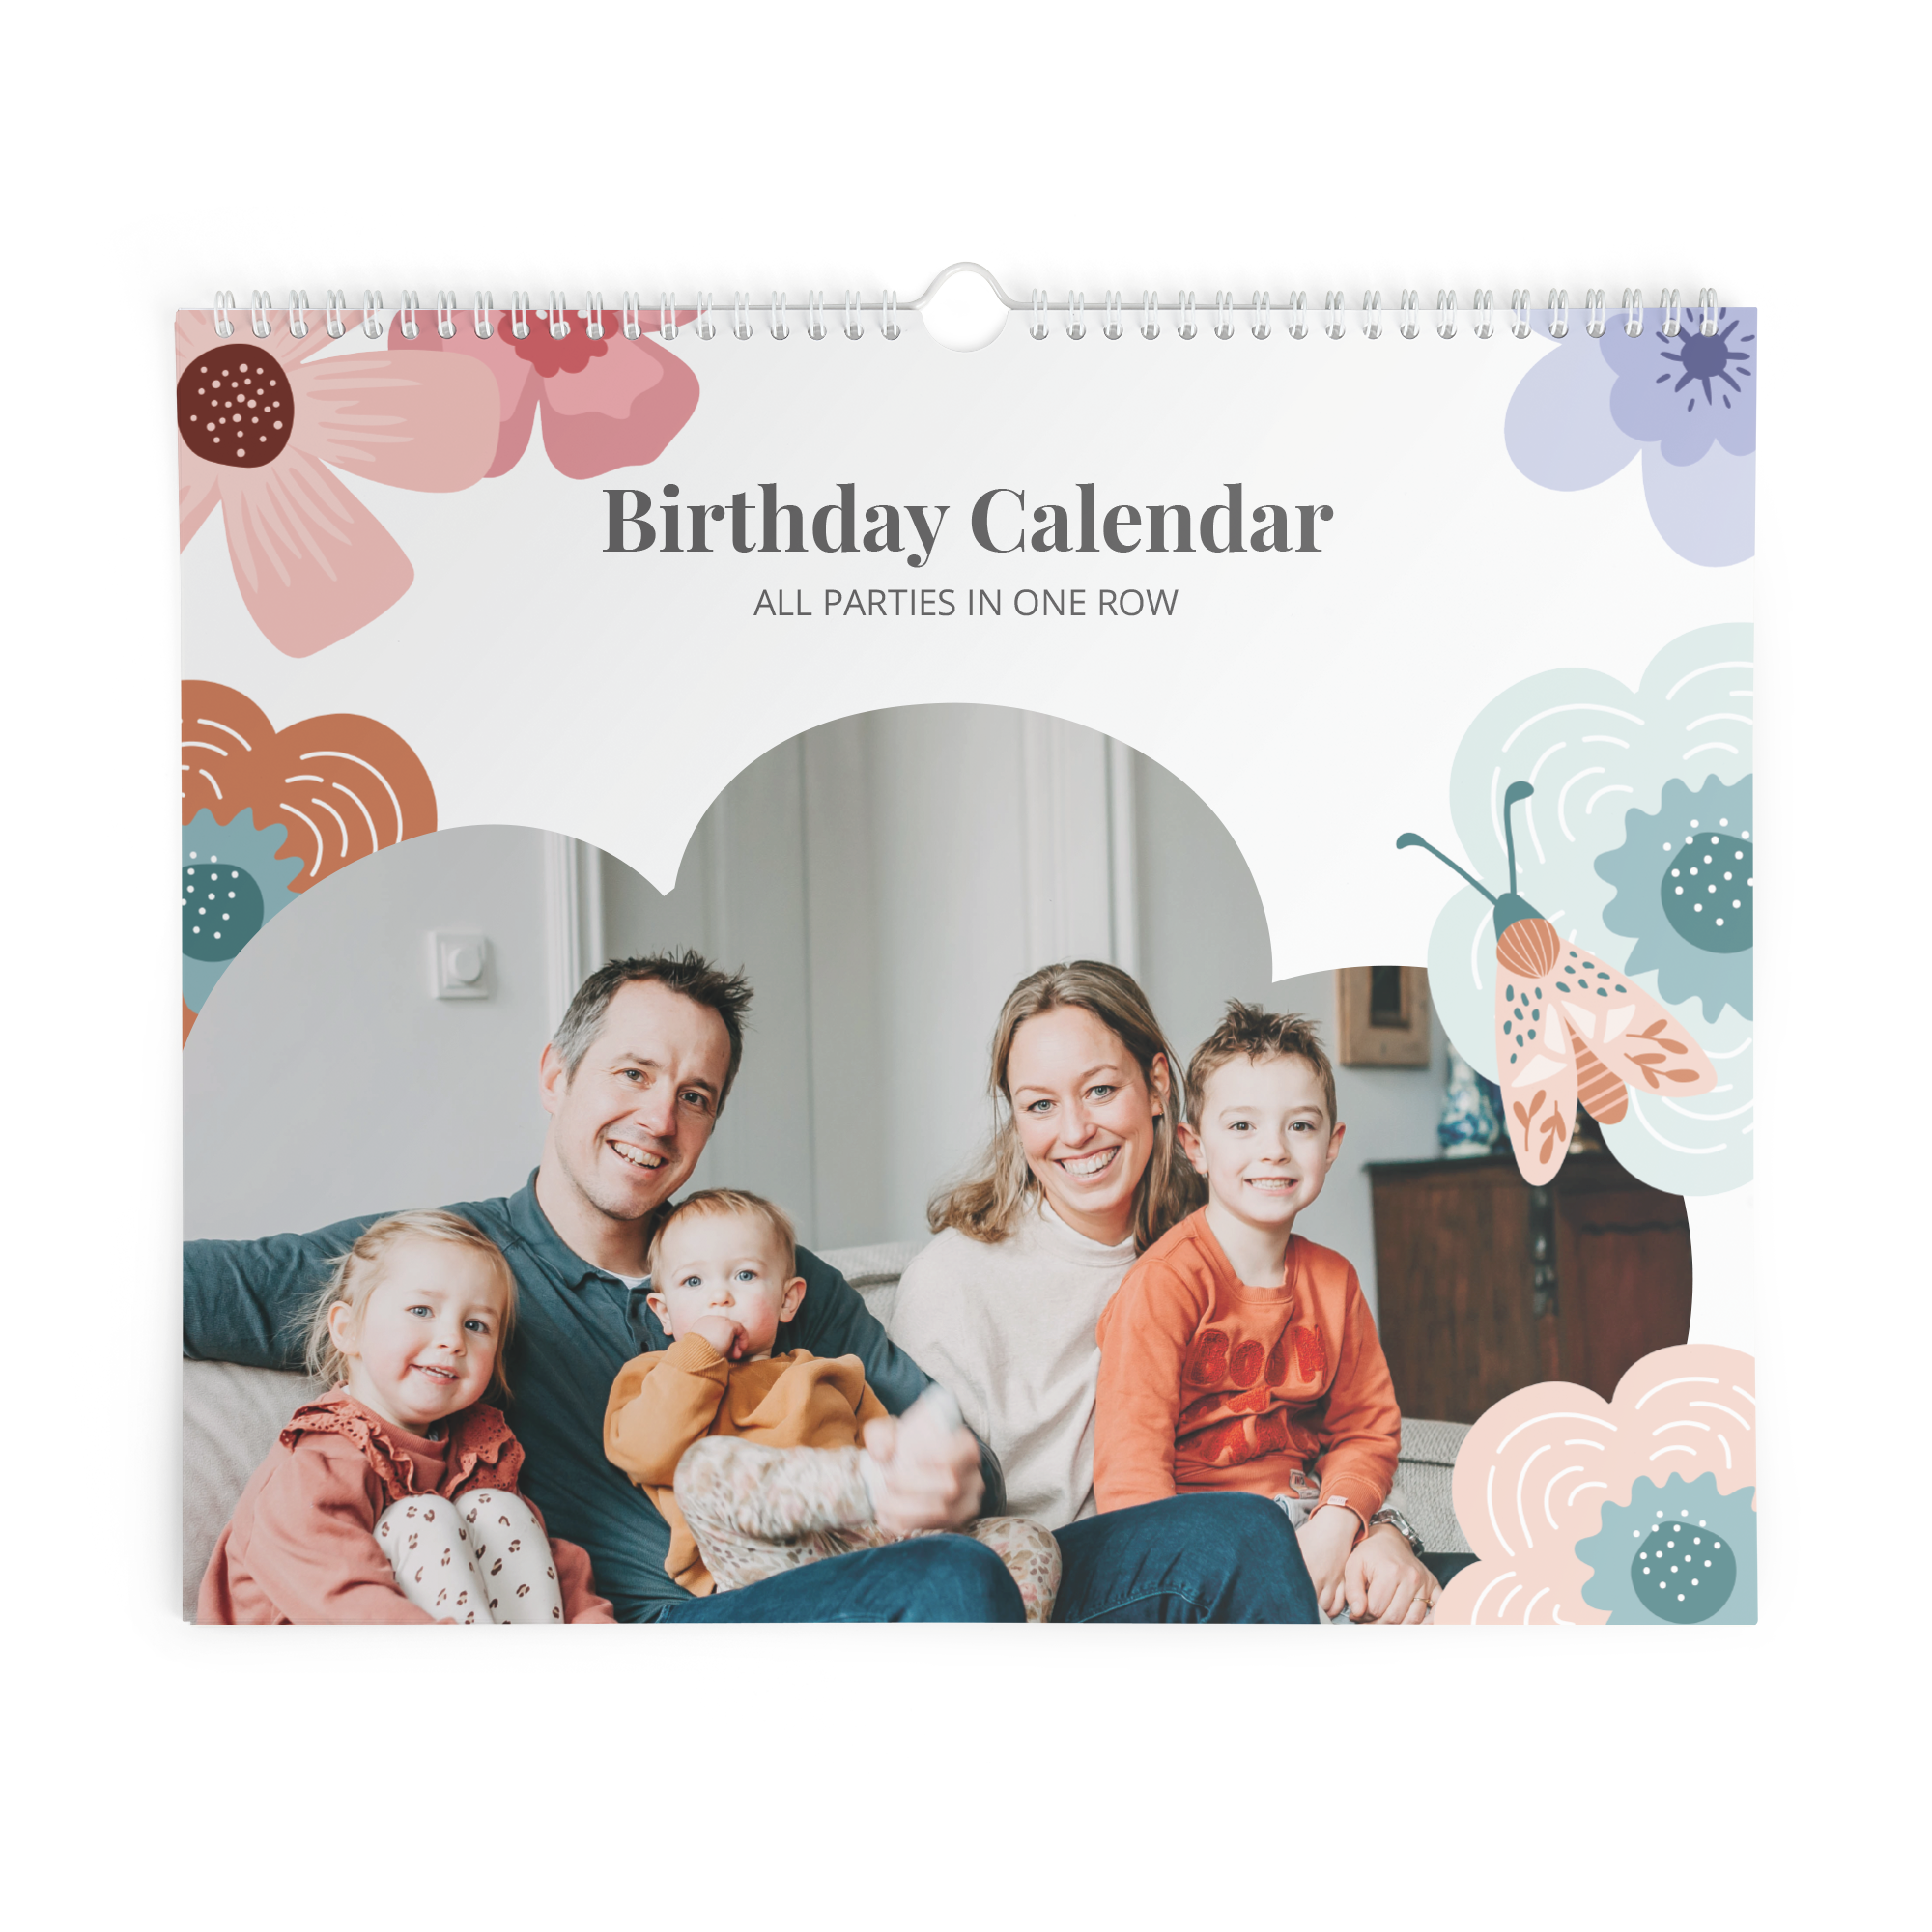 Kalendarz urodzinowy